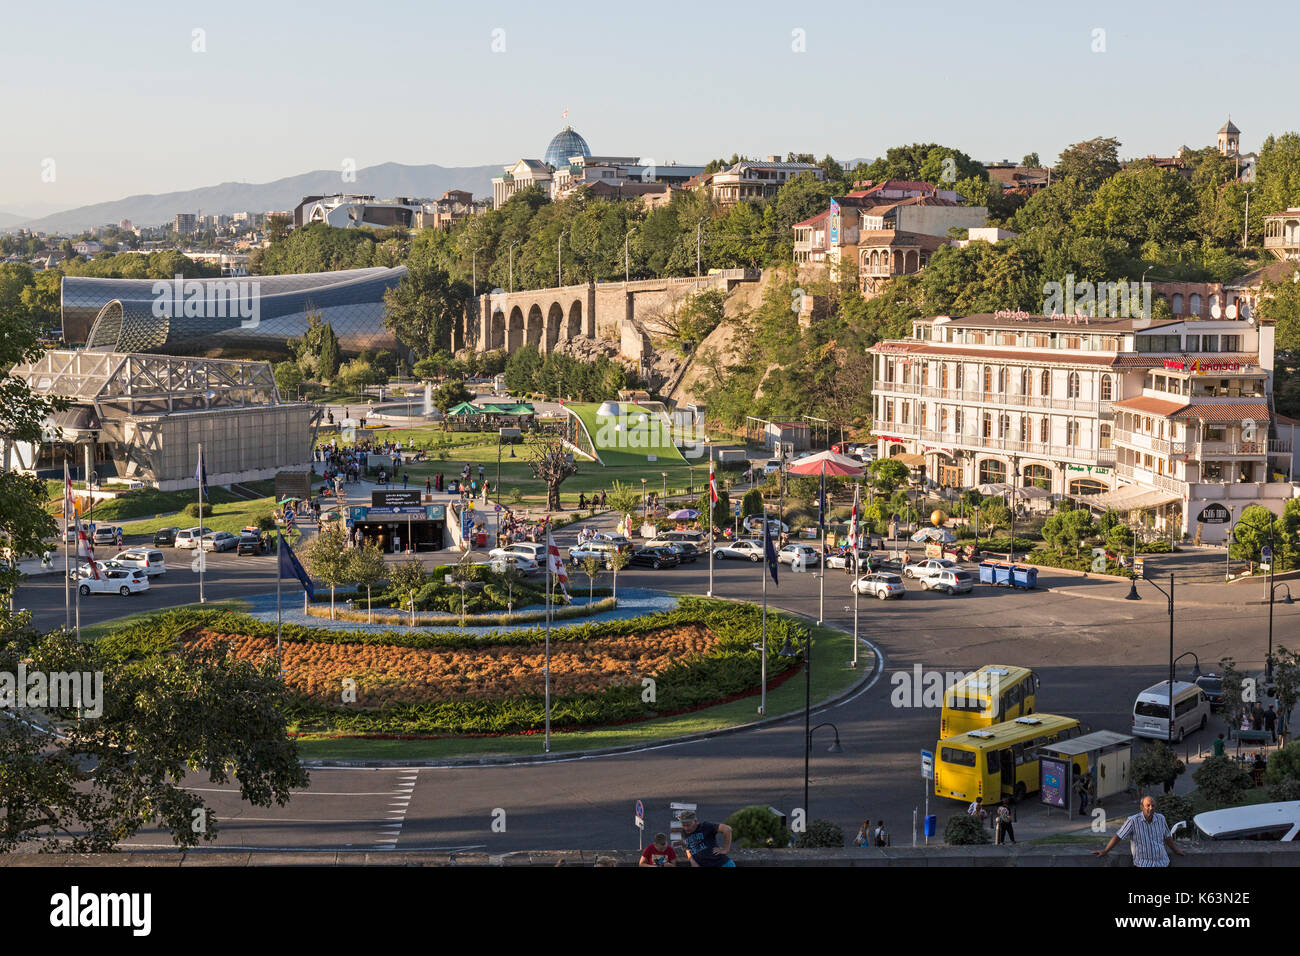 Vue du centre de Tbilissi, capitale de la Géorgie, montrant le trafic et parcs. Banque D'Images